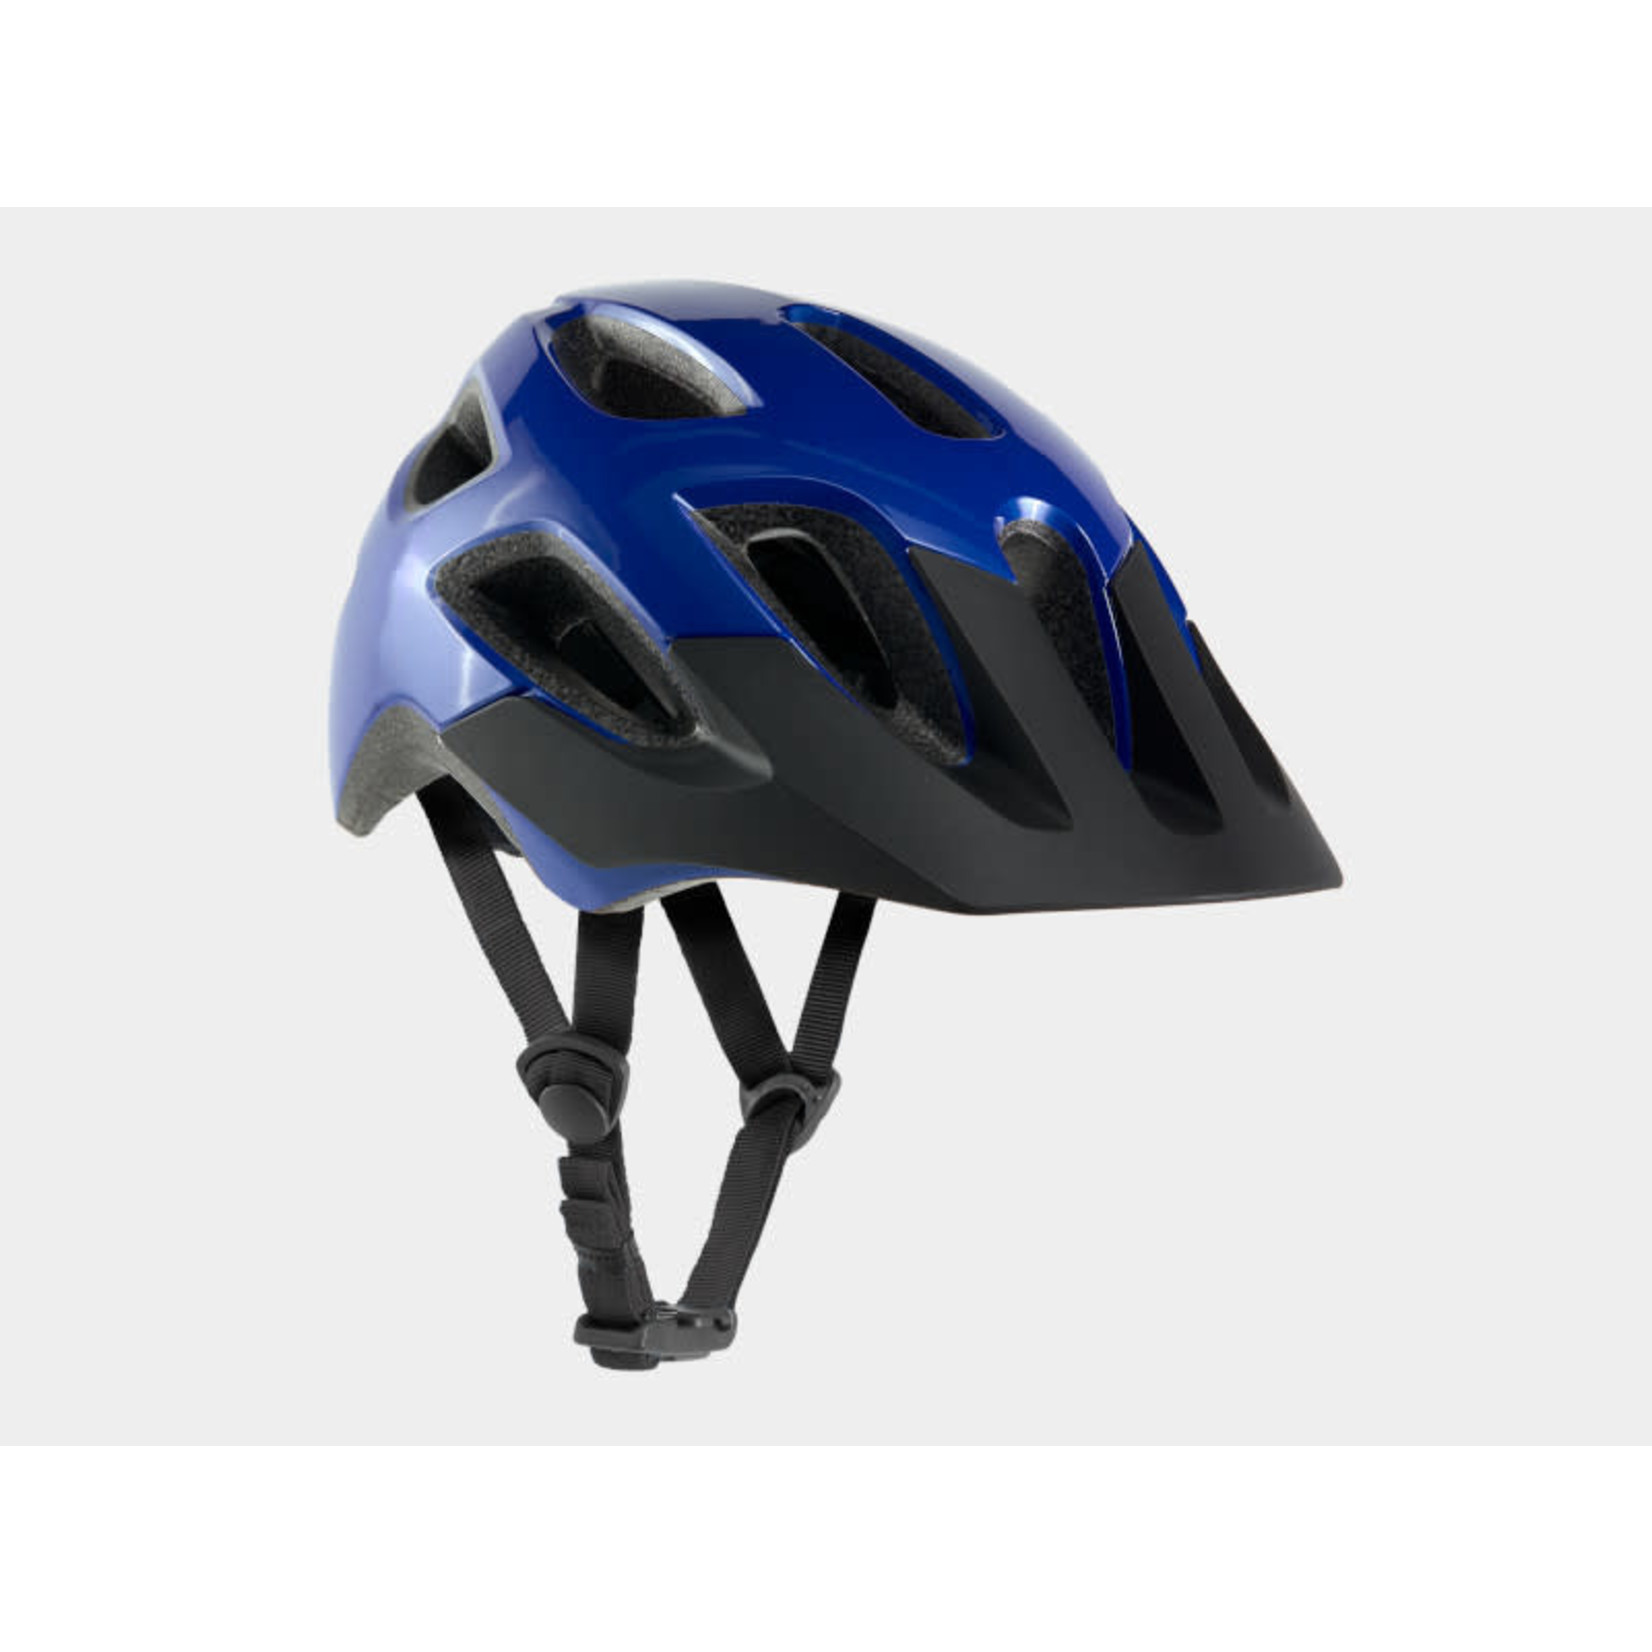 Bontrager Bontrager Tyro Children's Bike Helmet, Alpine Blue